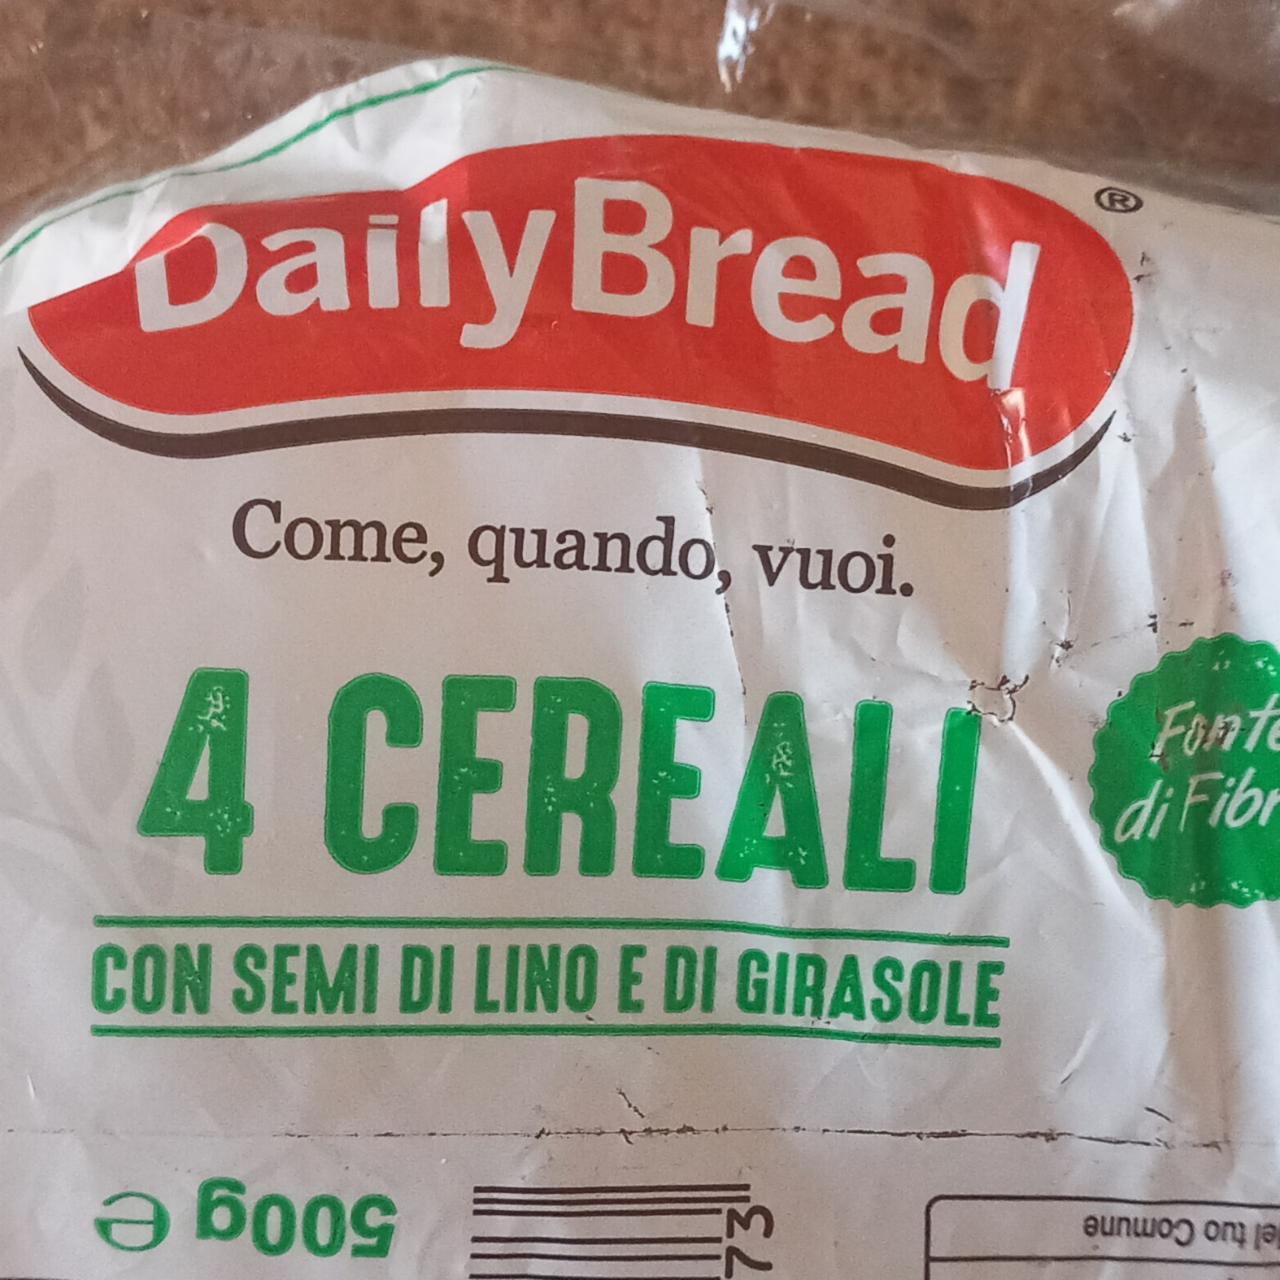 Фото - 4 cereali con semi di lino e girasole Daily Bread